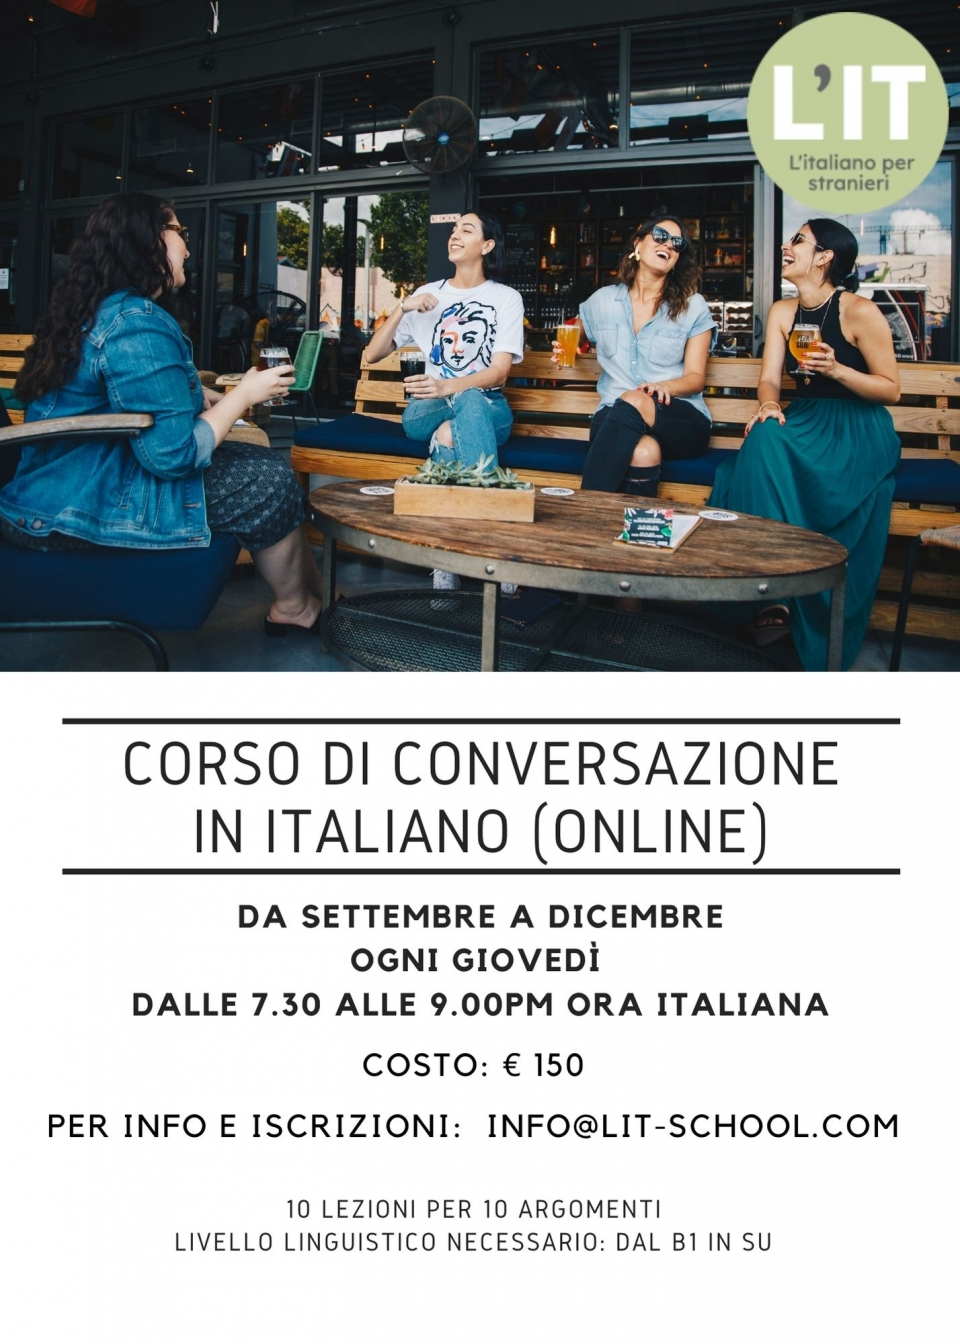 Corso di conversazione in italiano - Volantino